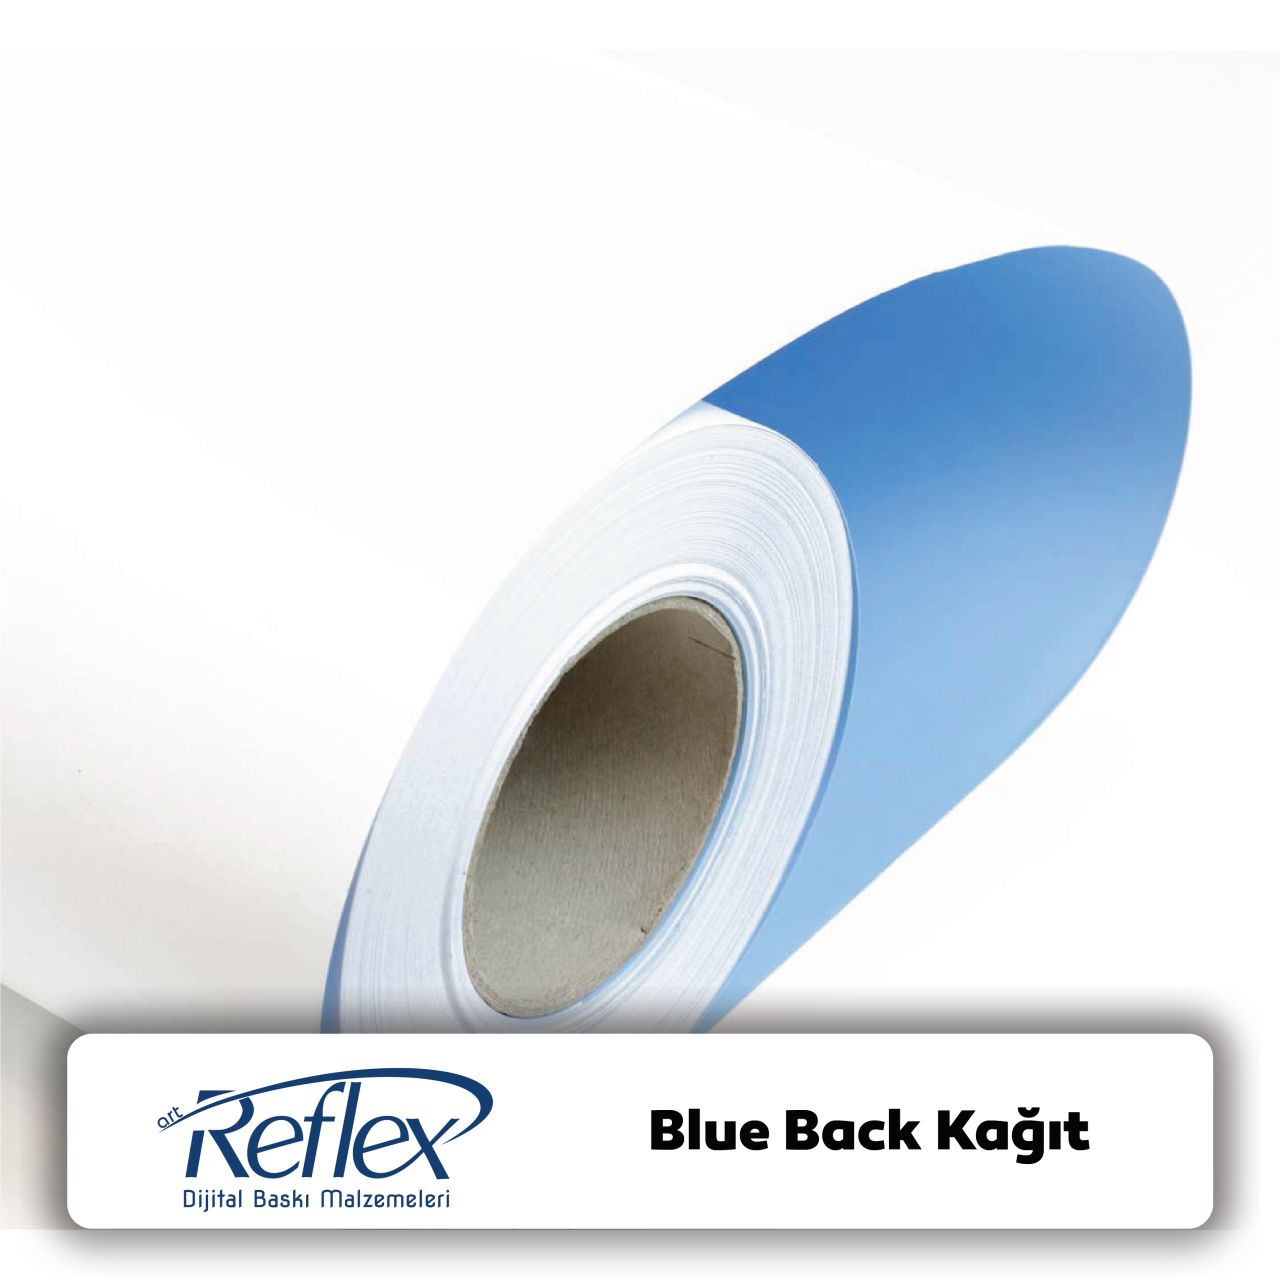 Blue Back Kağıt